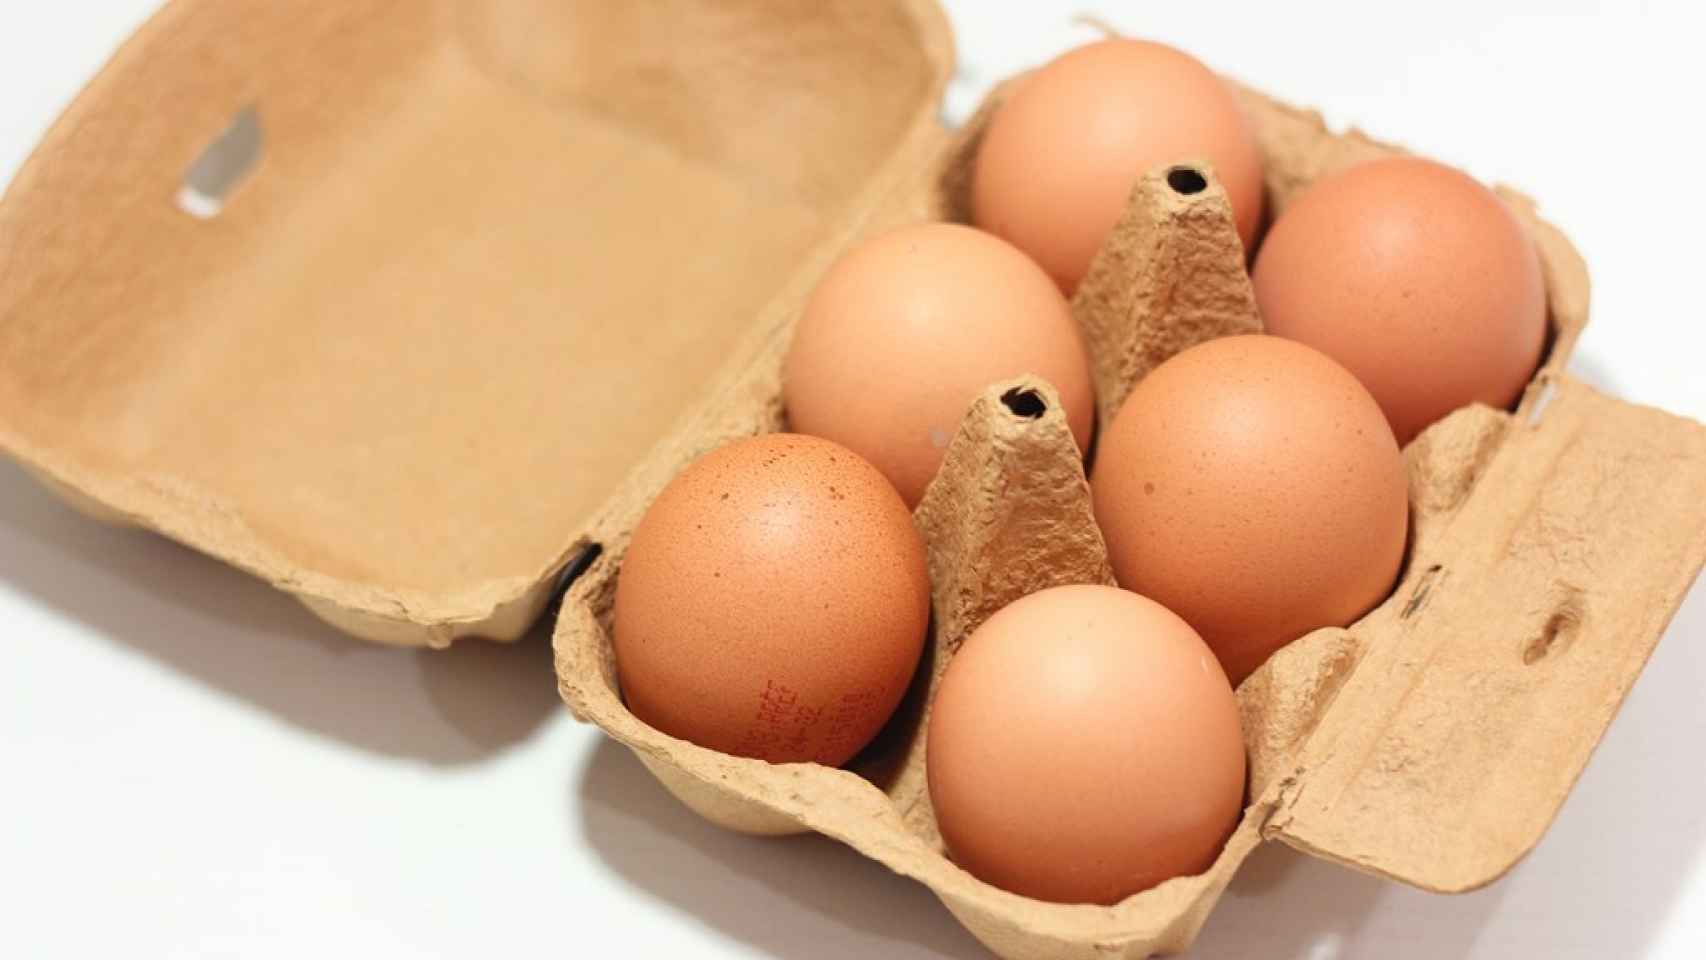 huevos frescos. Mejor calidad al mejor precio!